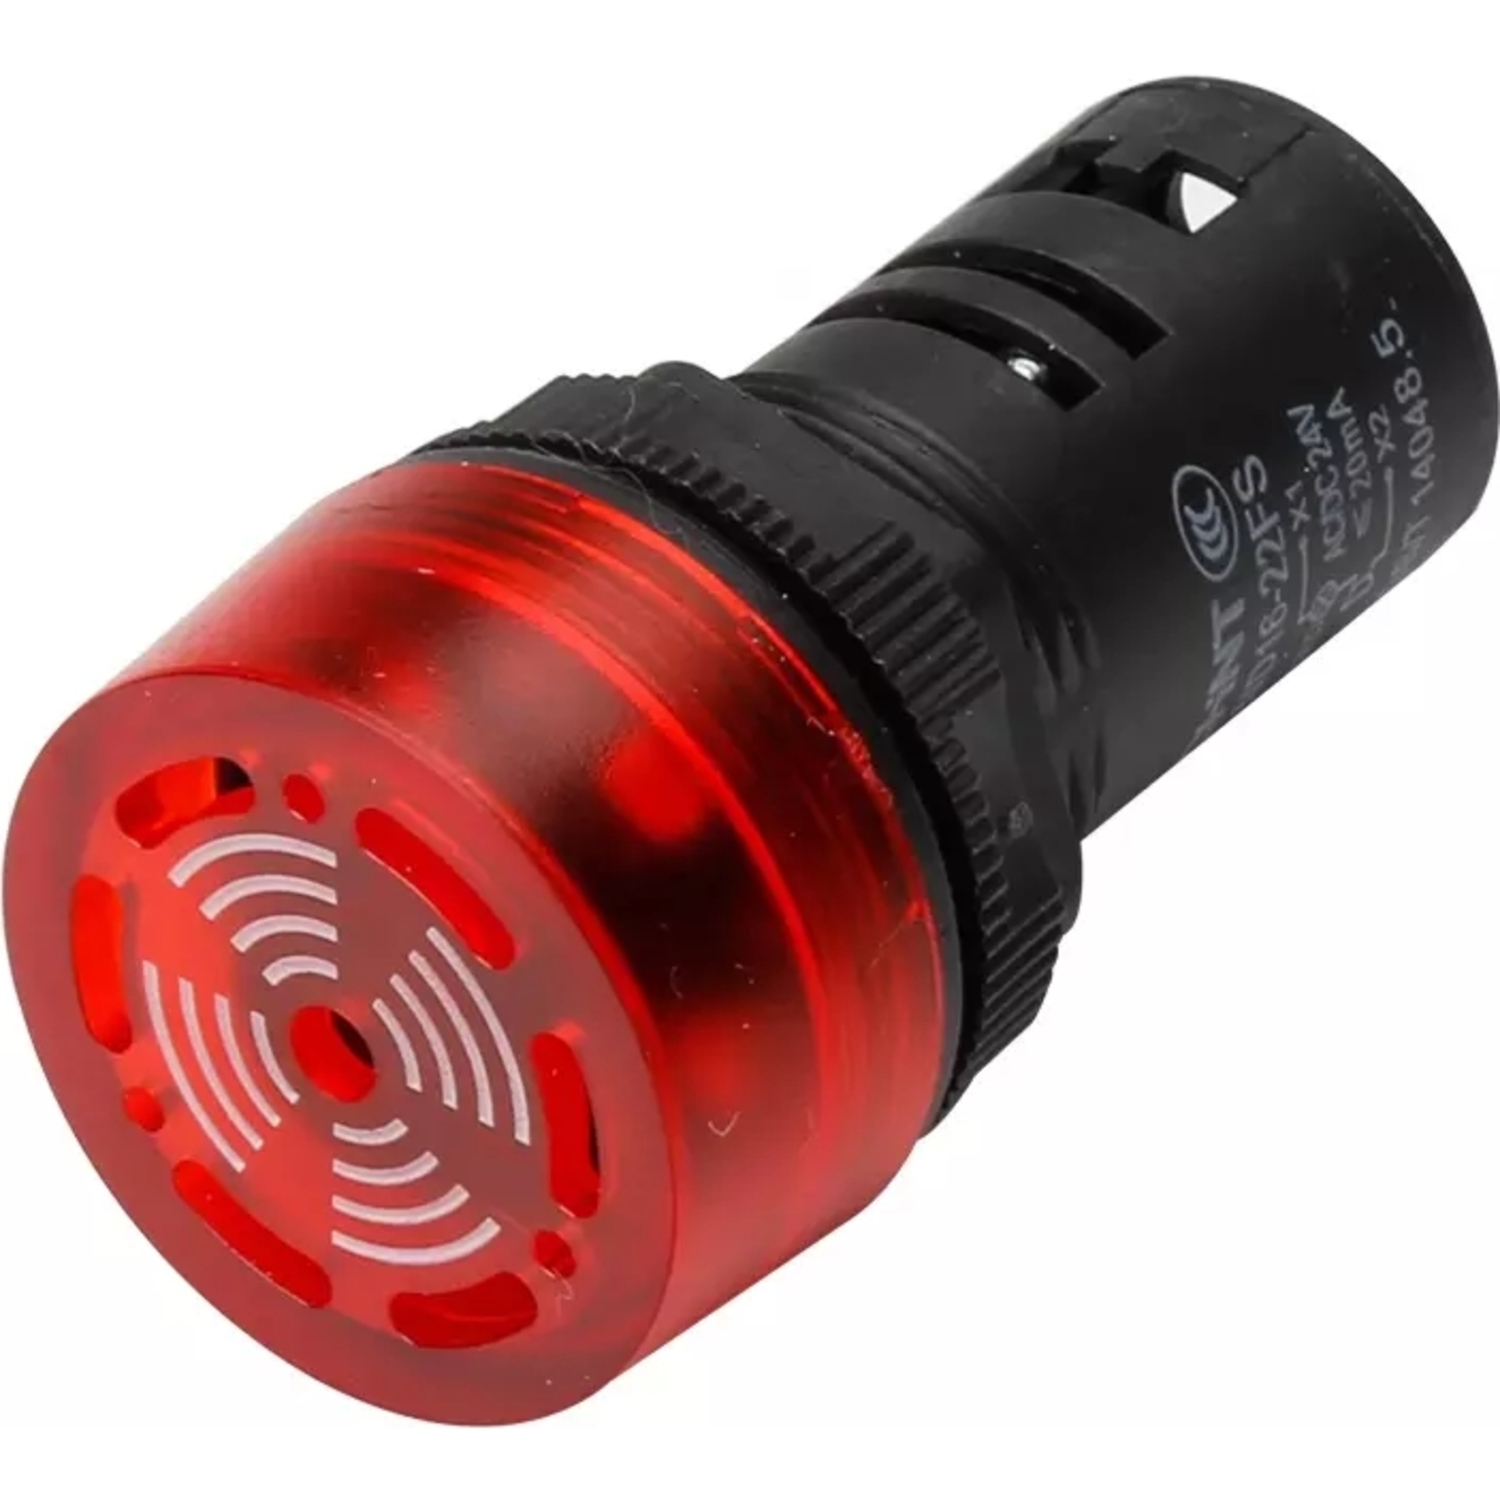 Сигнализатор звуковой ND16-22FS Φ22 мм красный LED АС/DC24В (R)